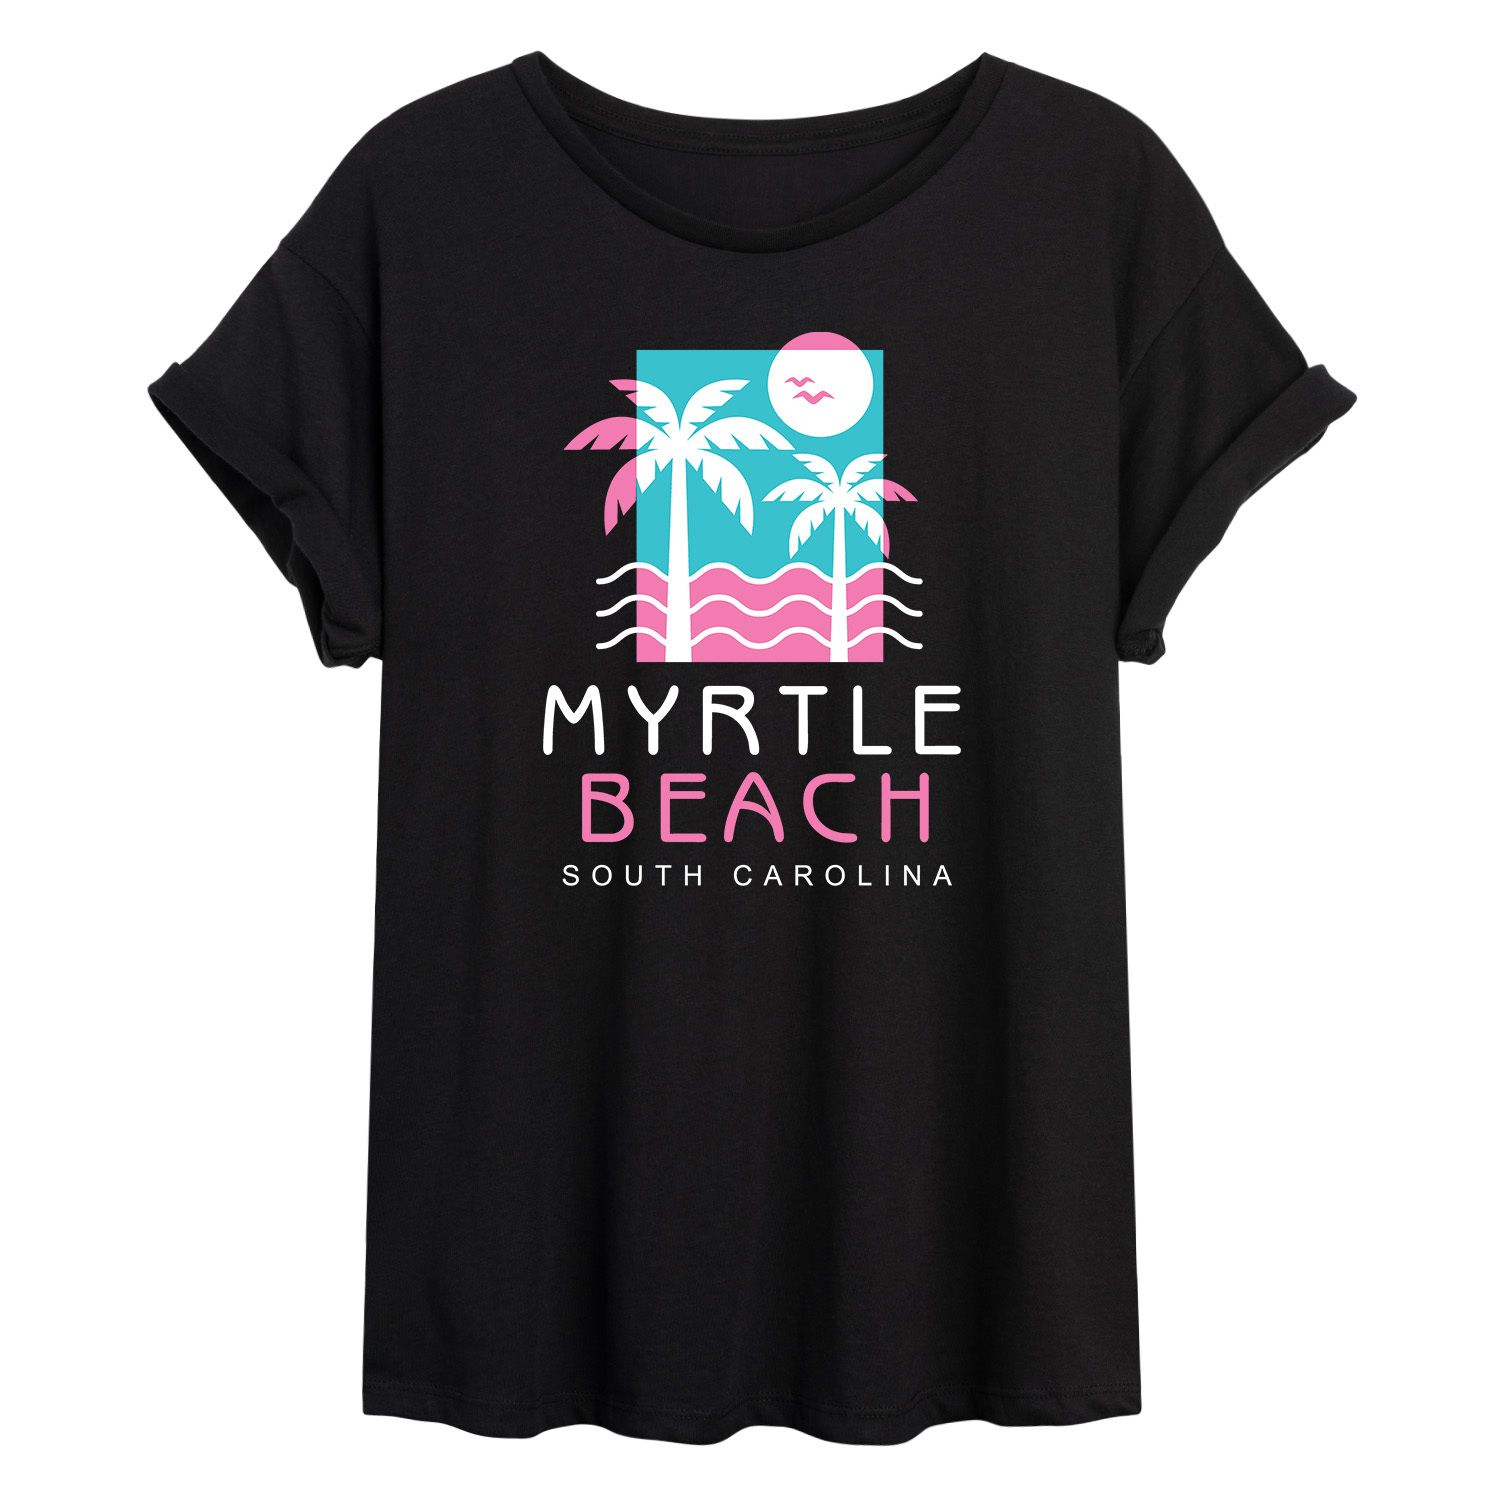 Большая футболка с рисунком Myrtle Beach для юниоров Licensed Character